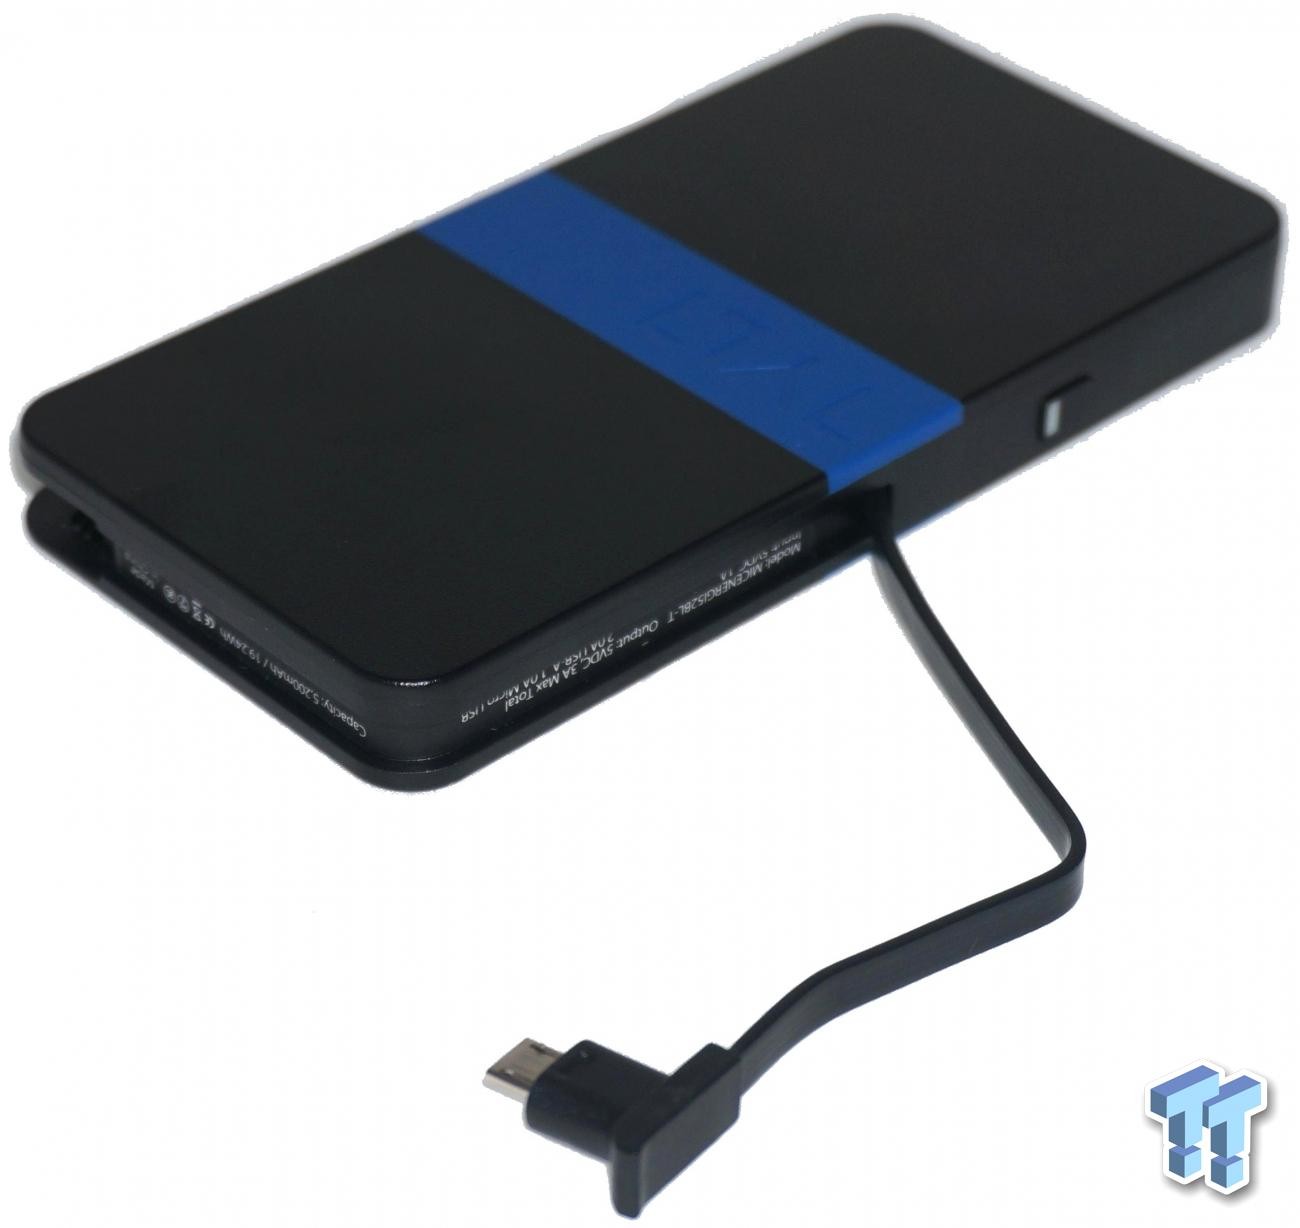 Chargeur USB 10A intelligent pour 6 appareils (smartphones